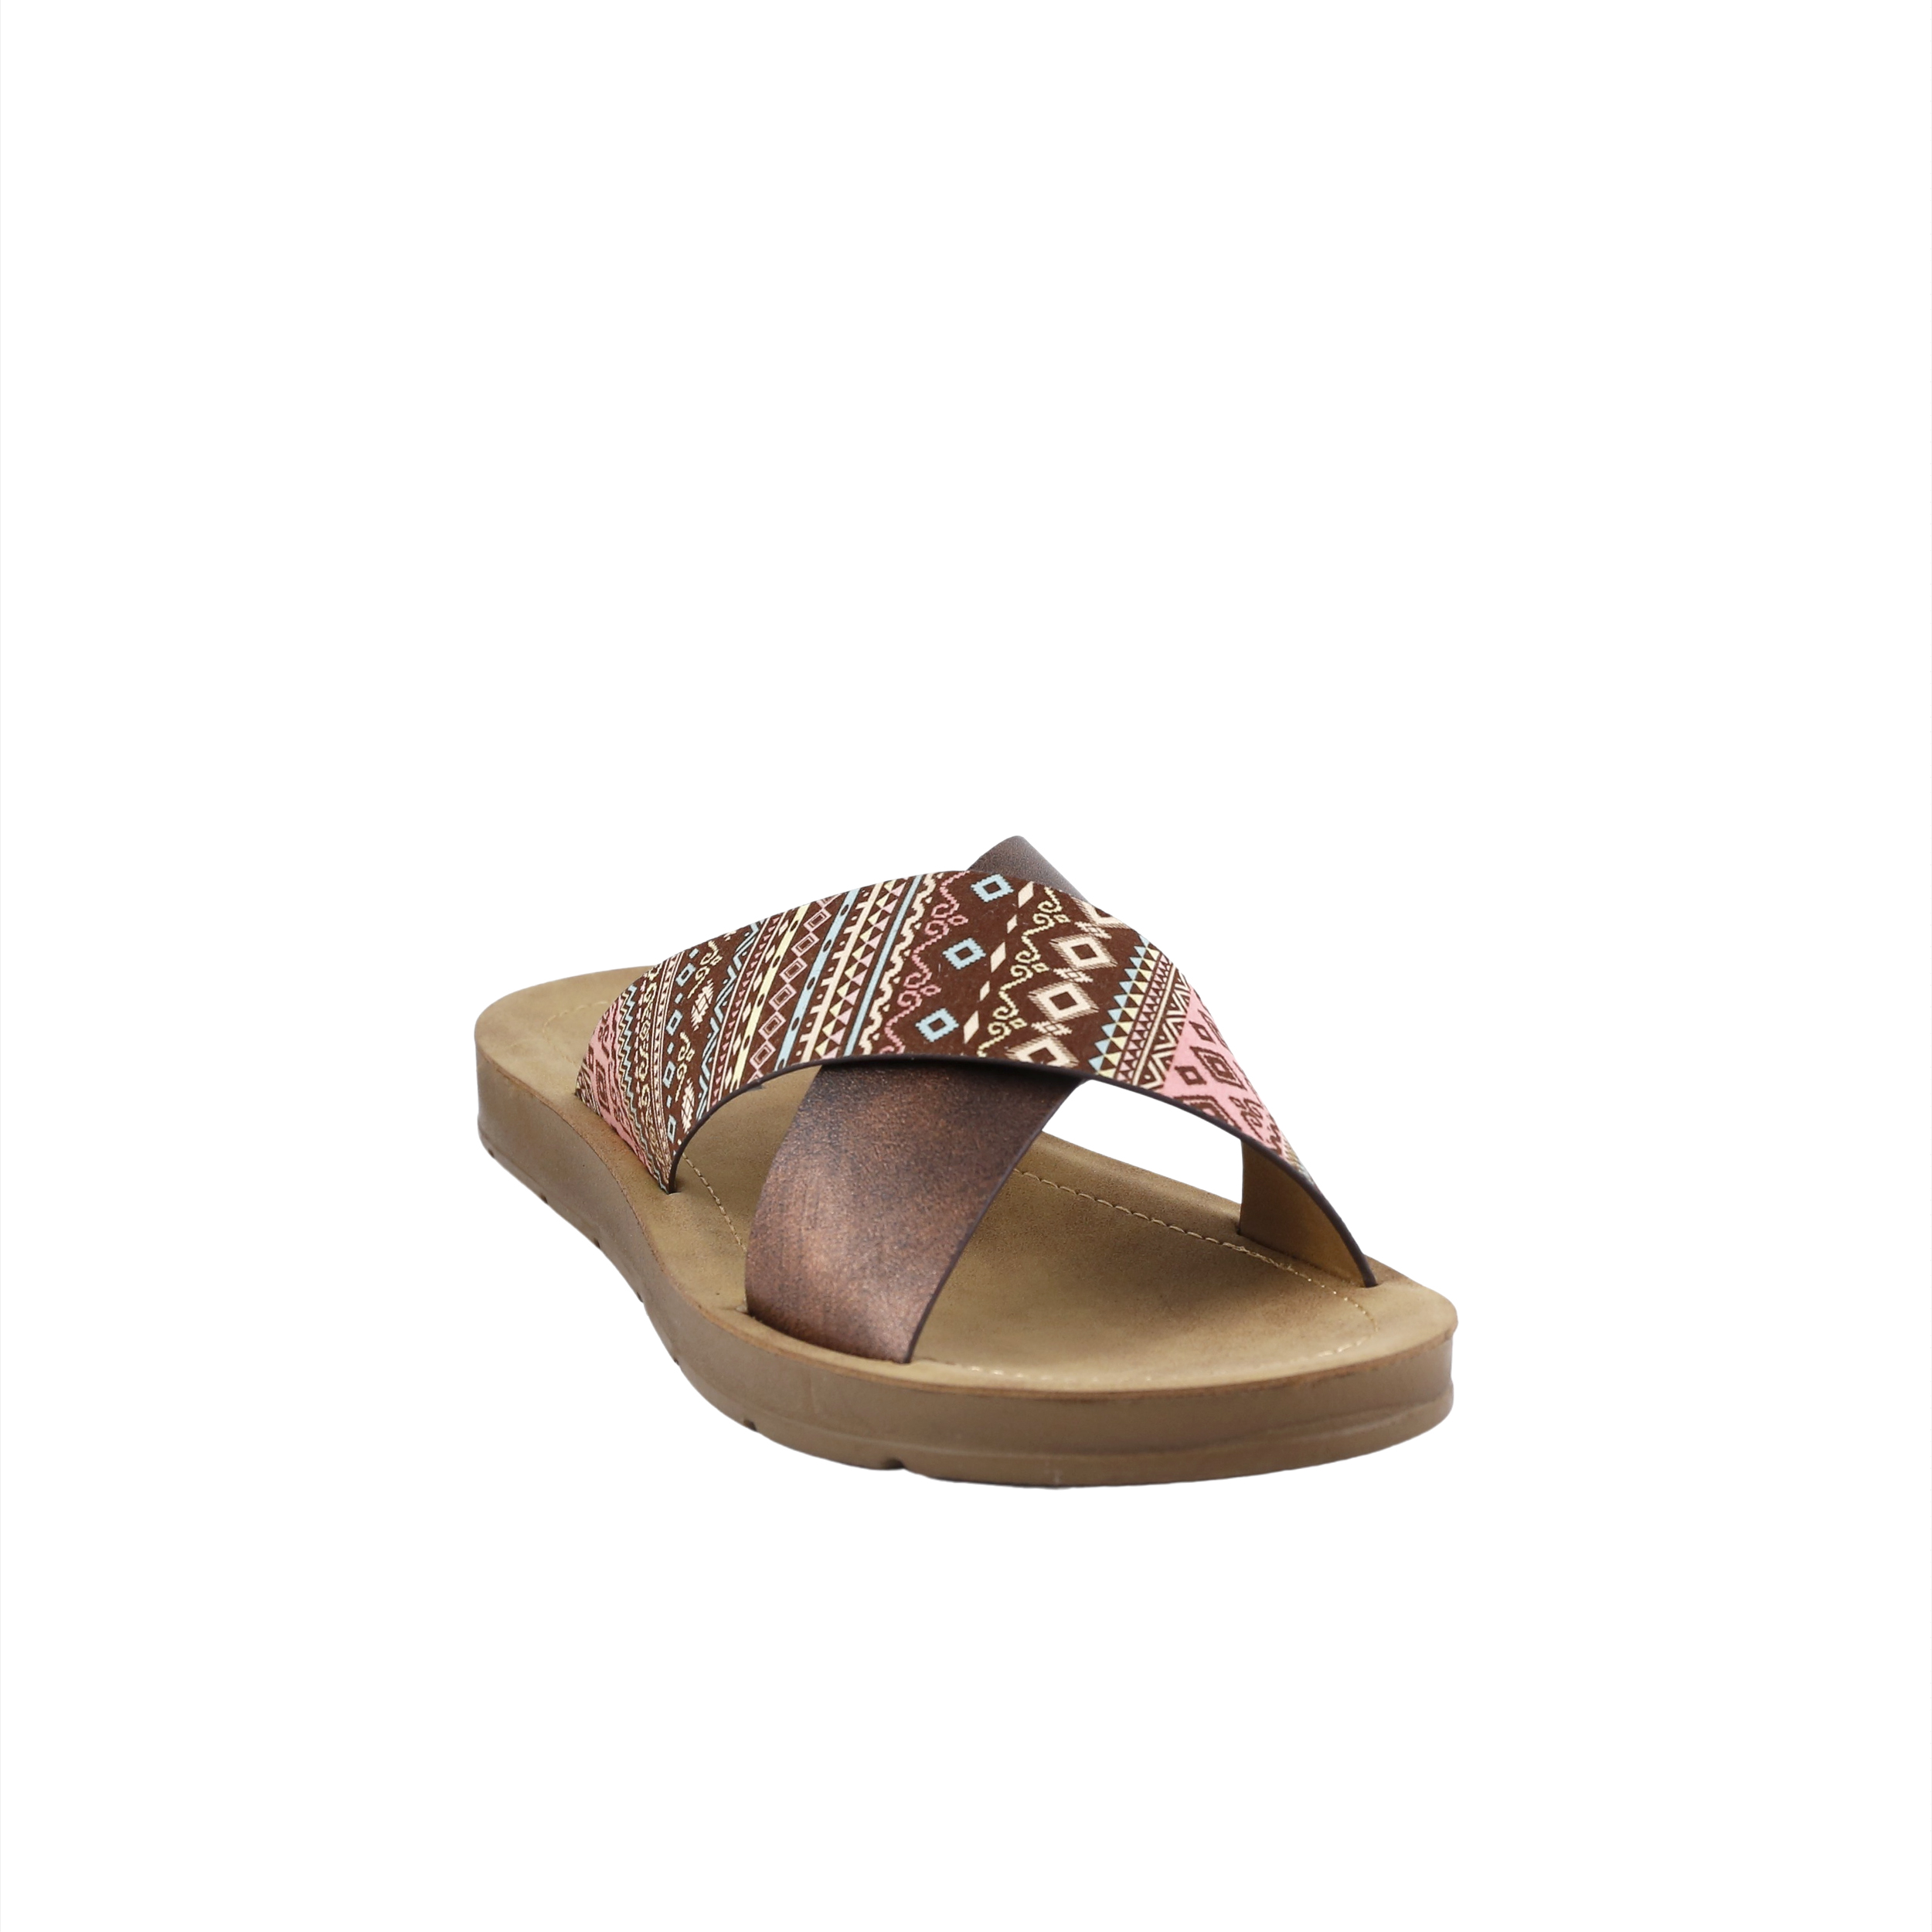 Woman Shoes Sandals - Flip Flops Bronze flip flop Χ